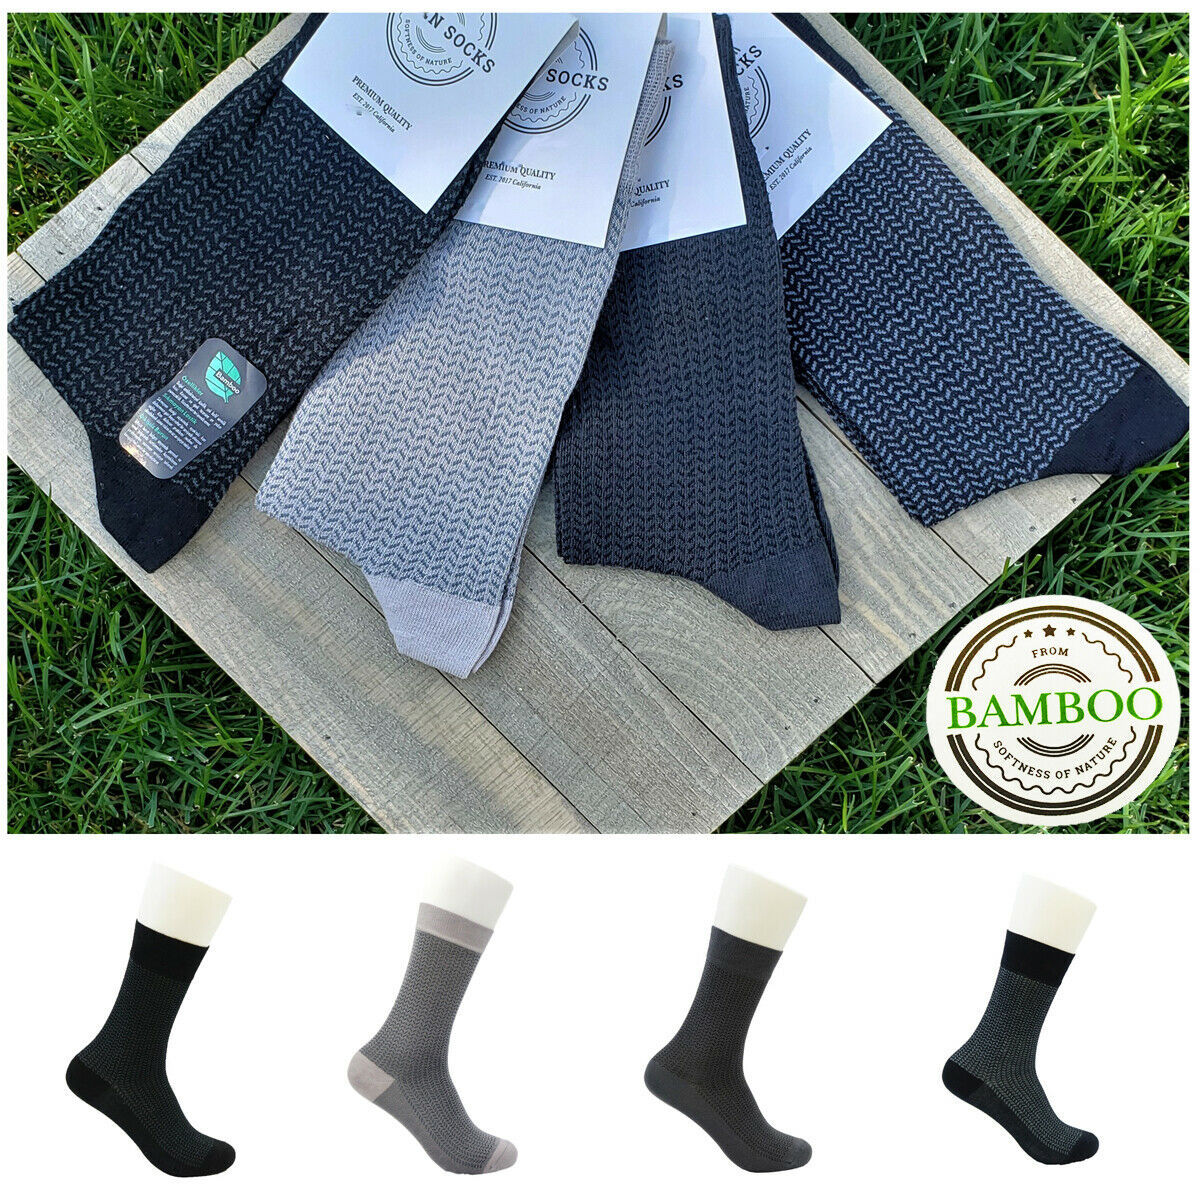 A.n.a/anatolian - Herringbone bamboo socks for men & women - soft quality dress - made in turkey